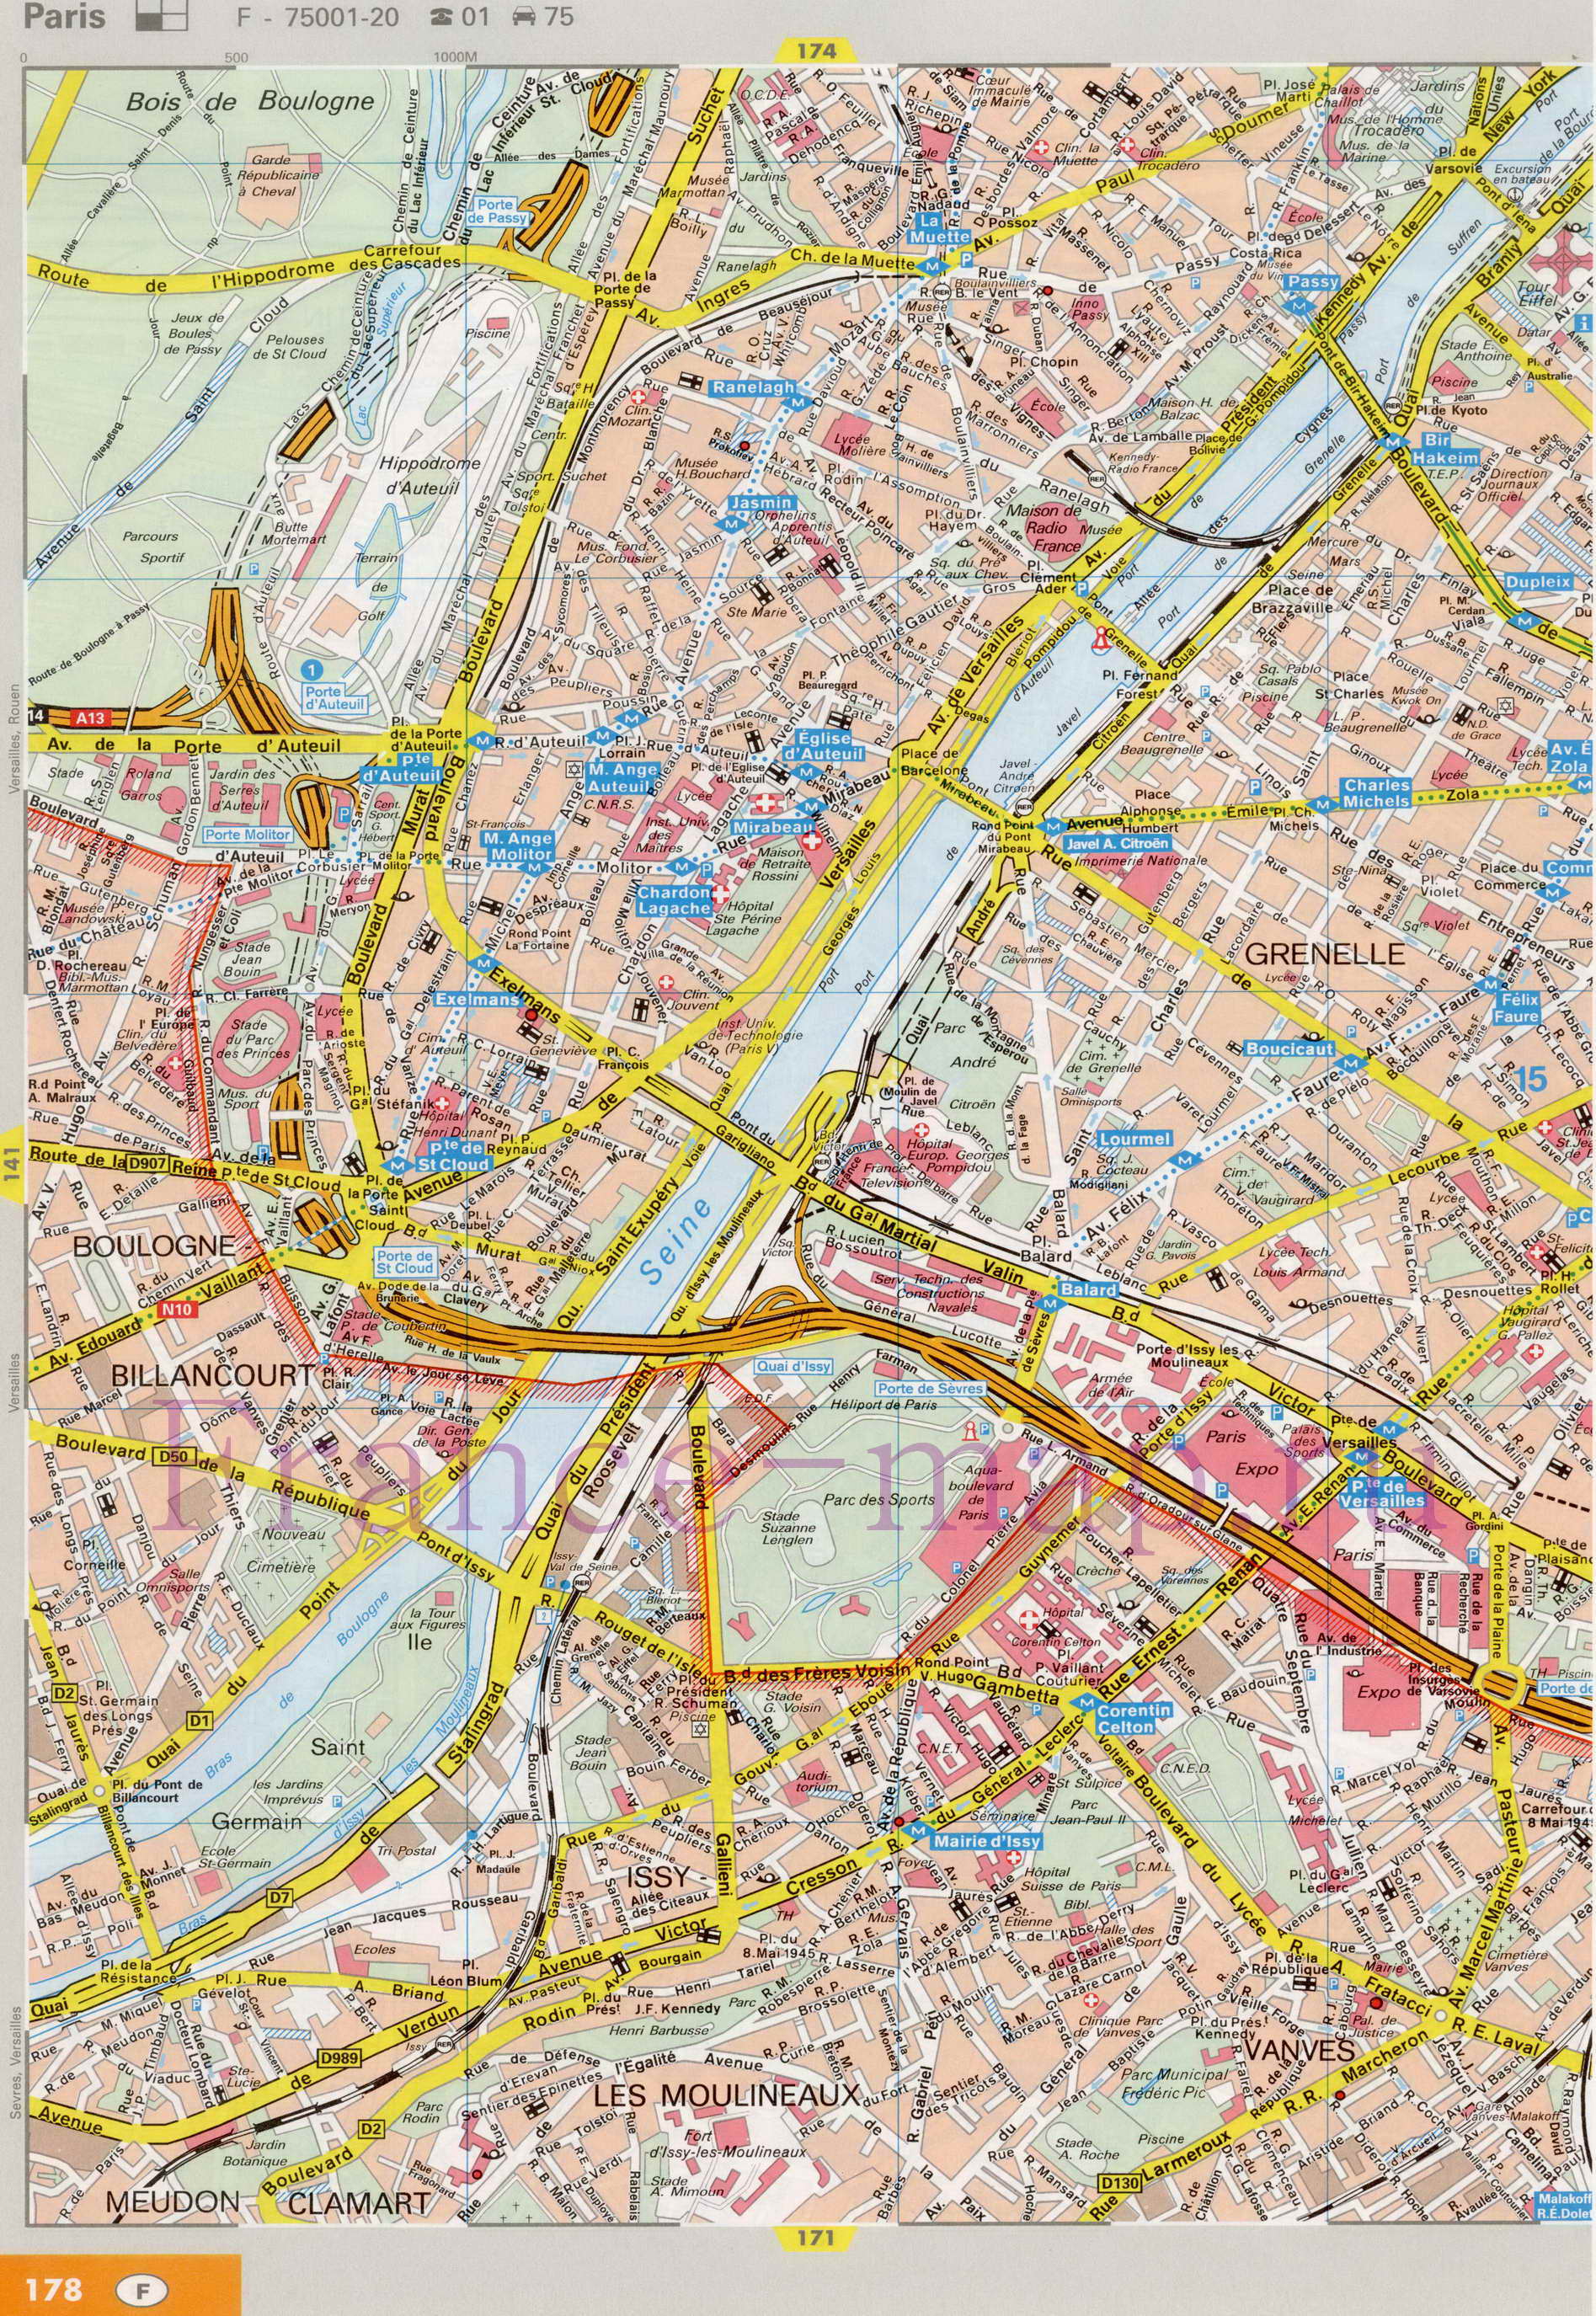 Карта улиц Парижа. Подробная карта Парижа с названиями улиц. Карта Парижа с улицами и достопримечательностями, A1 - 